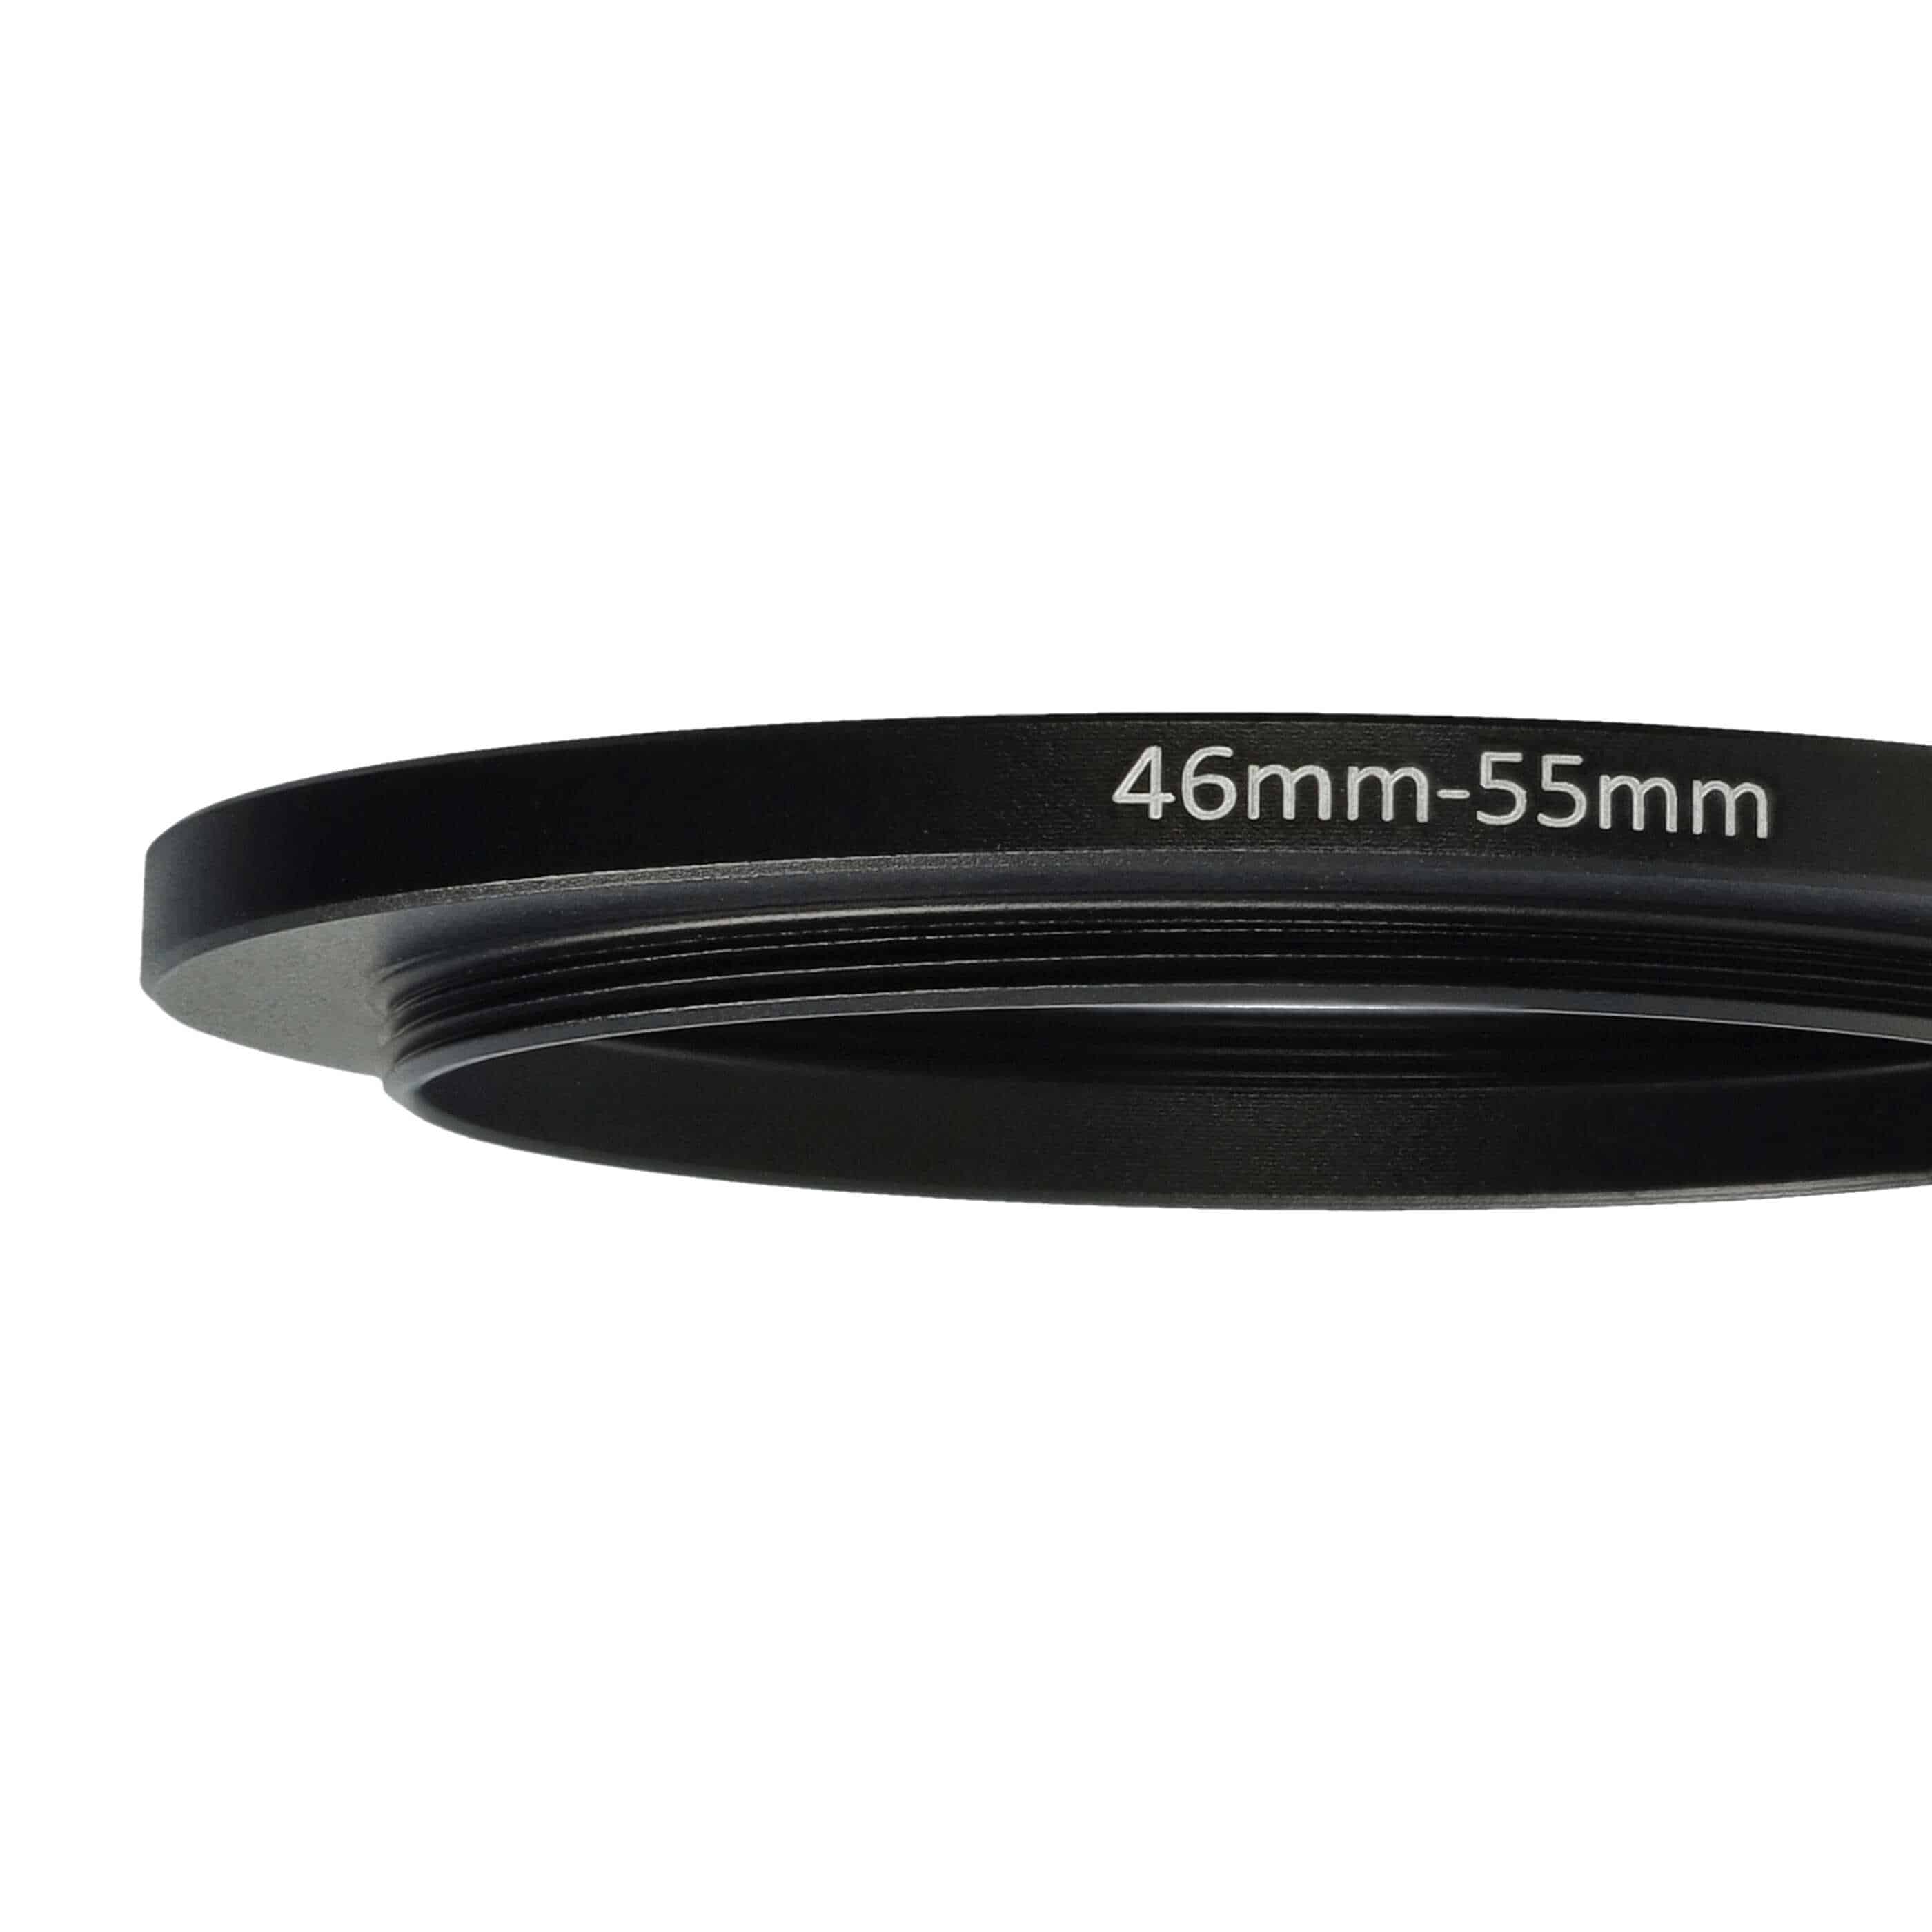 Redukcja filtrowa adapter 46 mm na 55 mm na różne obiektywy 